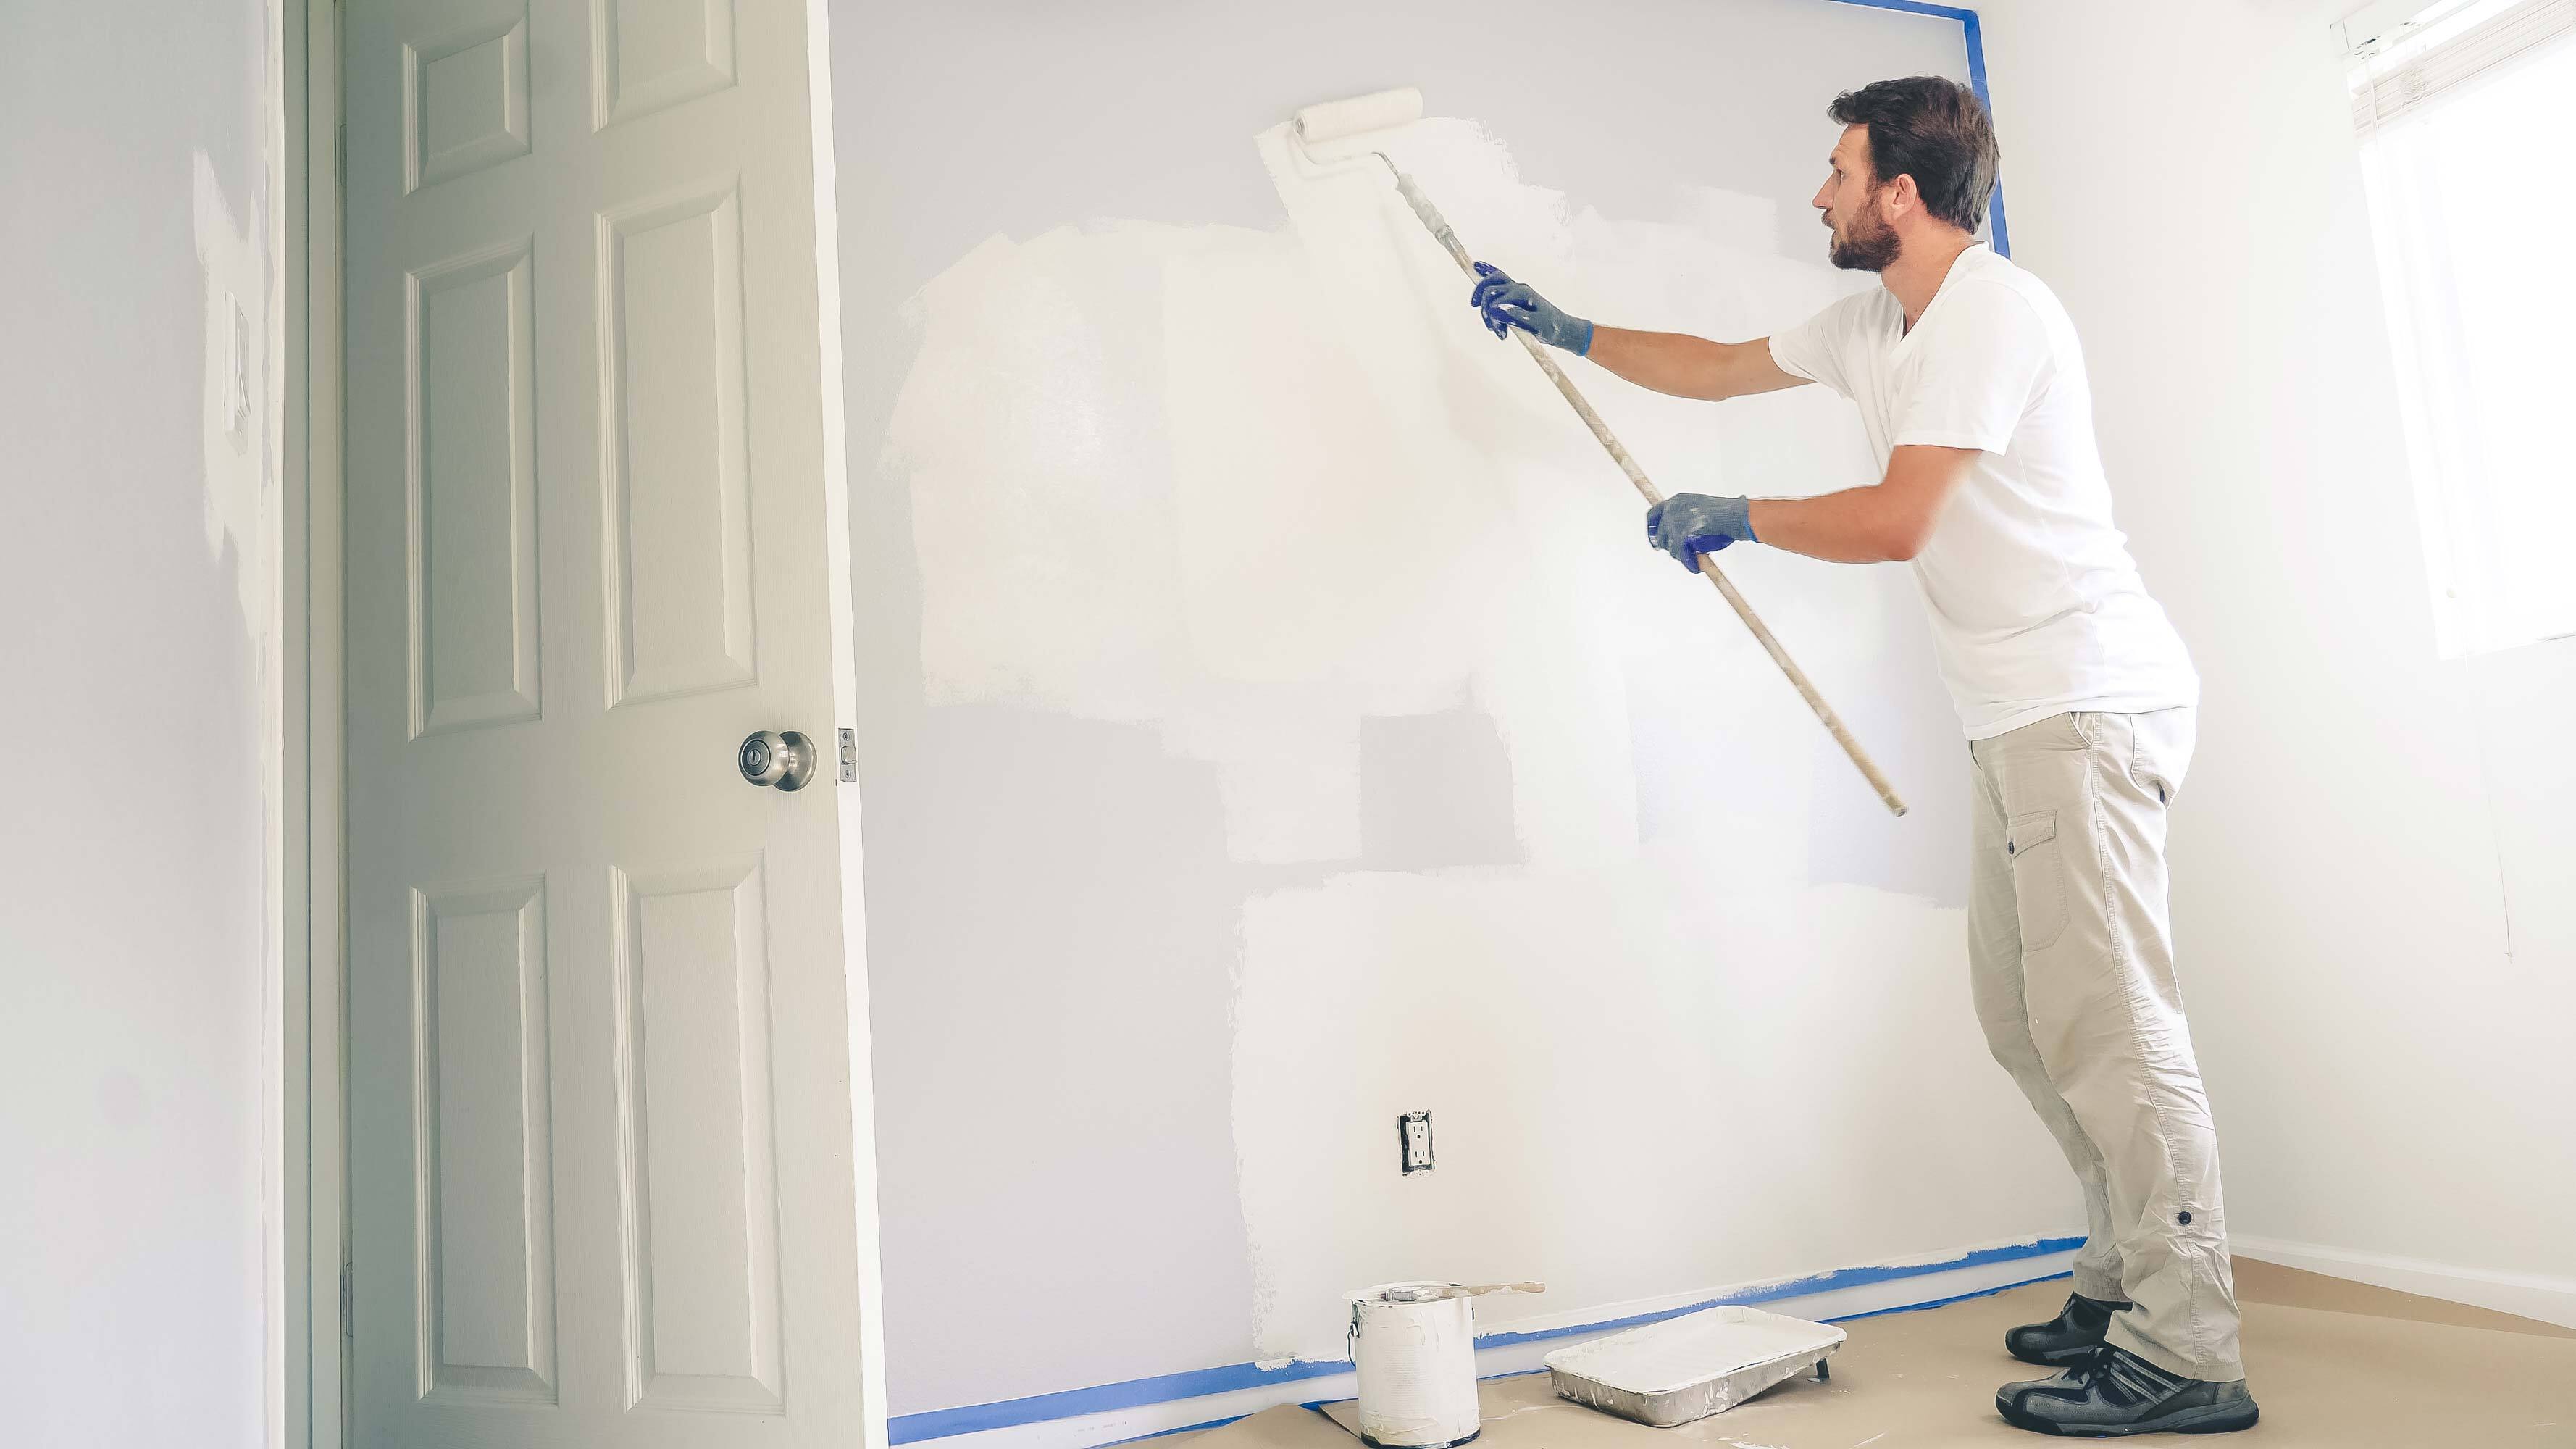 Man painting interior wall.